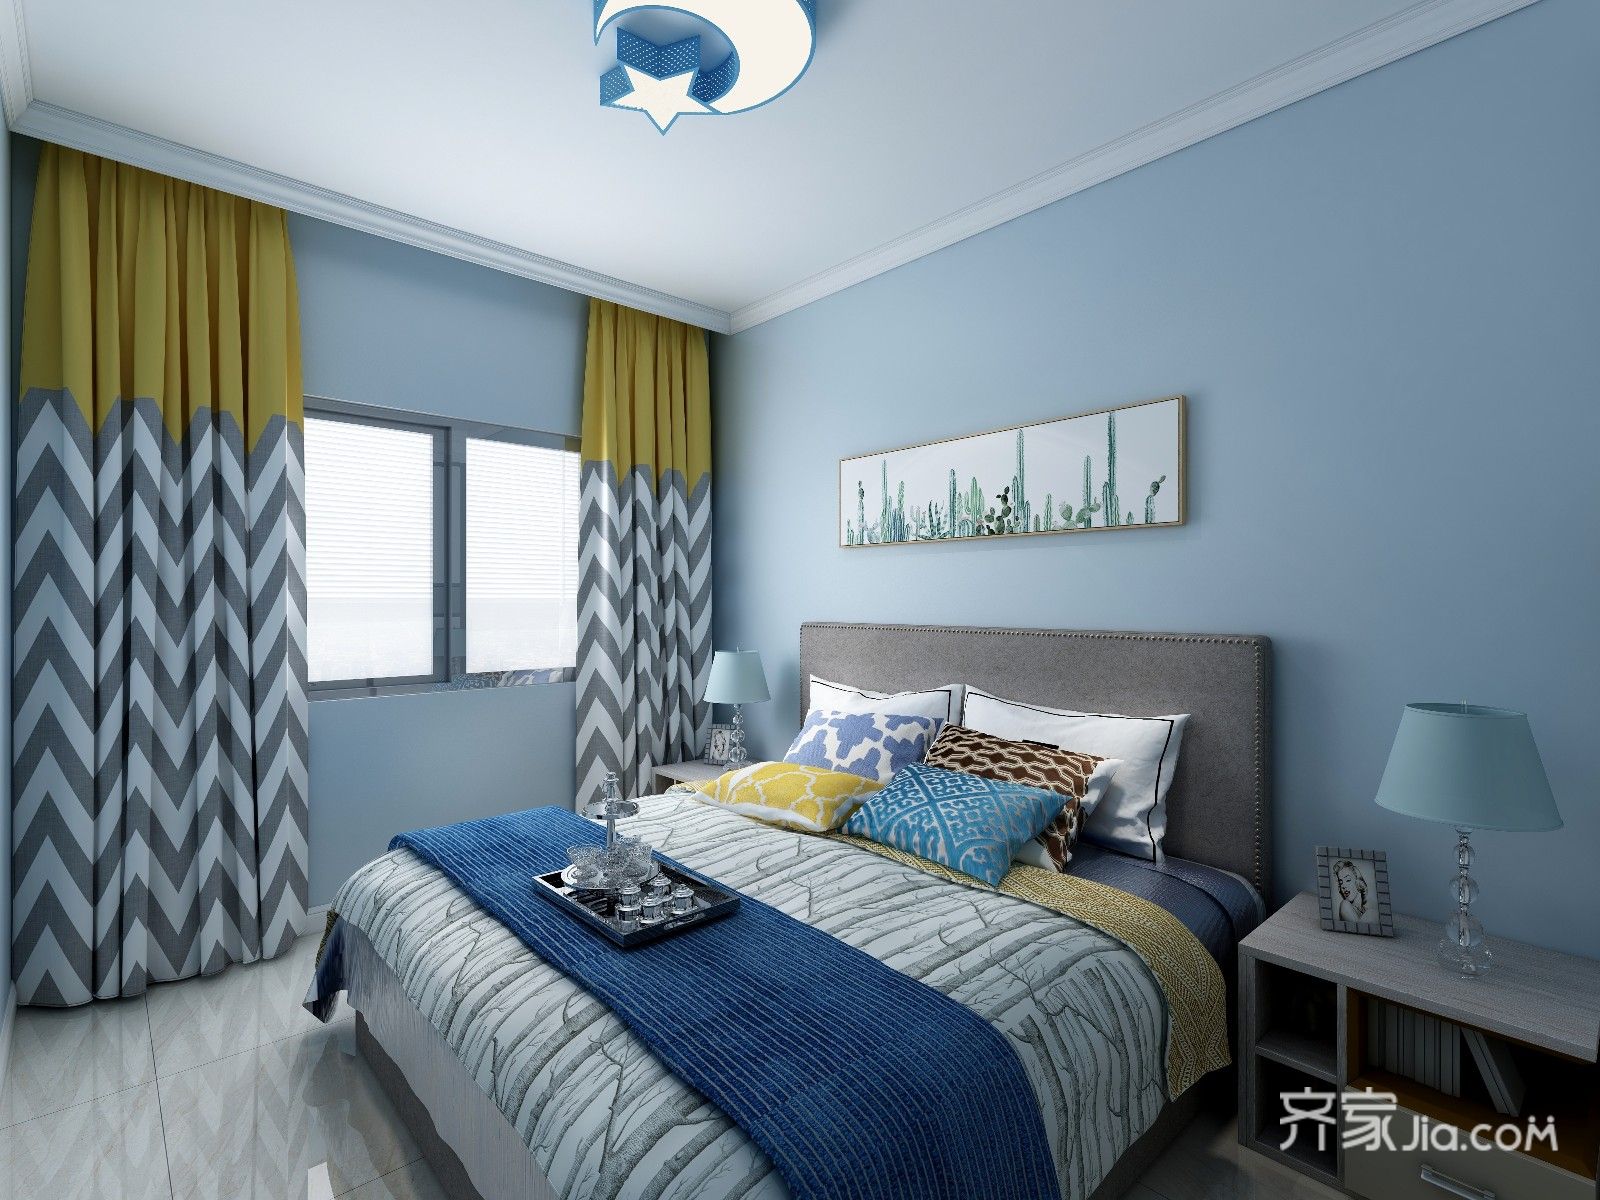 卧室小清新的浅蓝色烘托出简约干净的效果